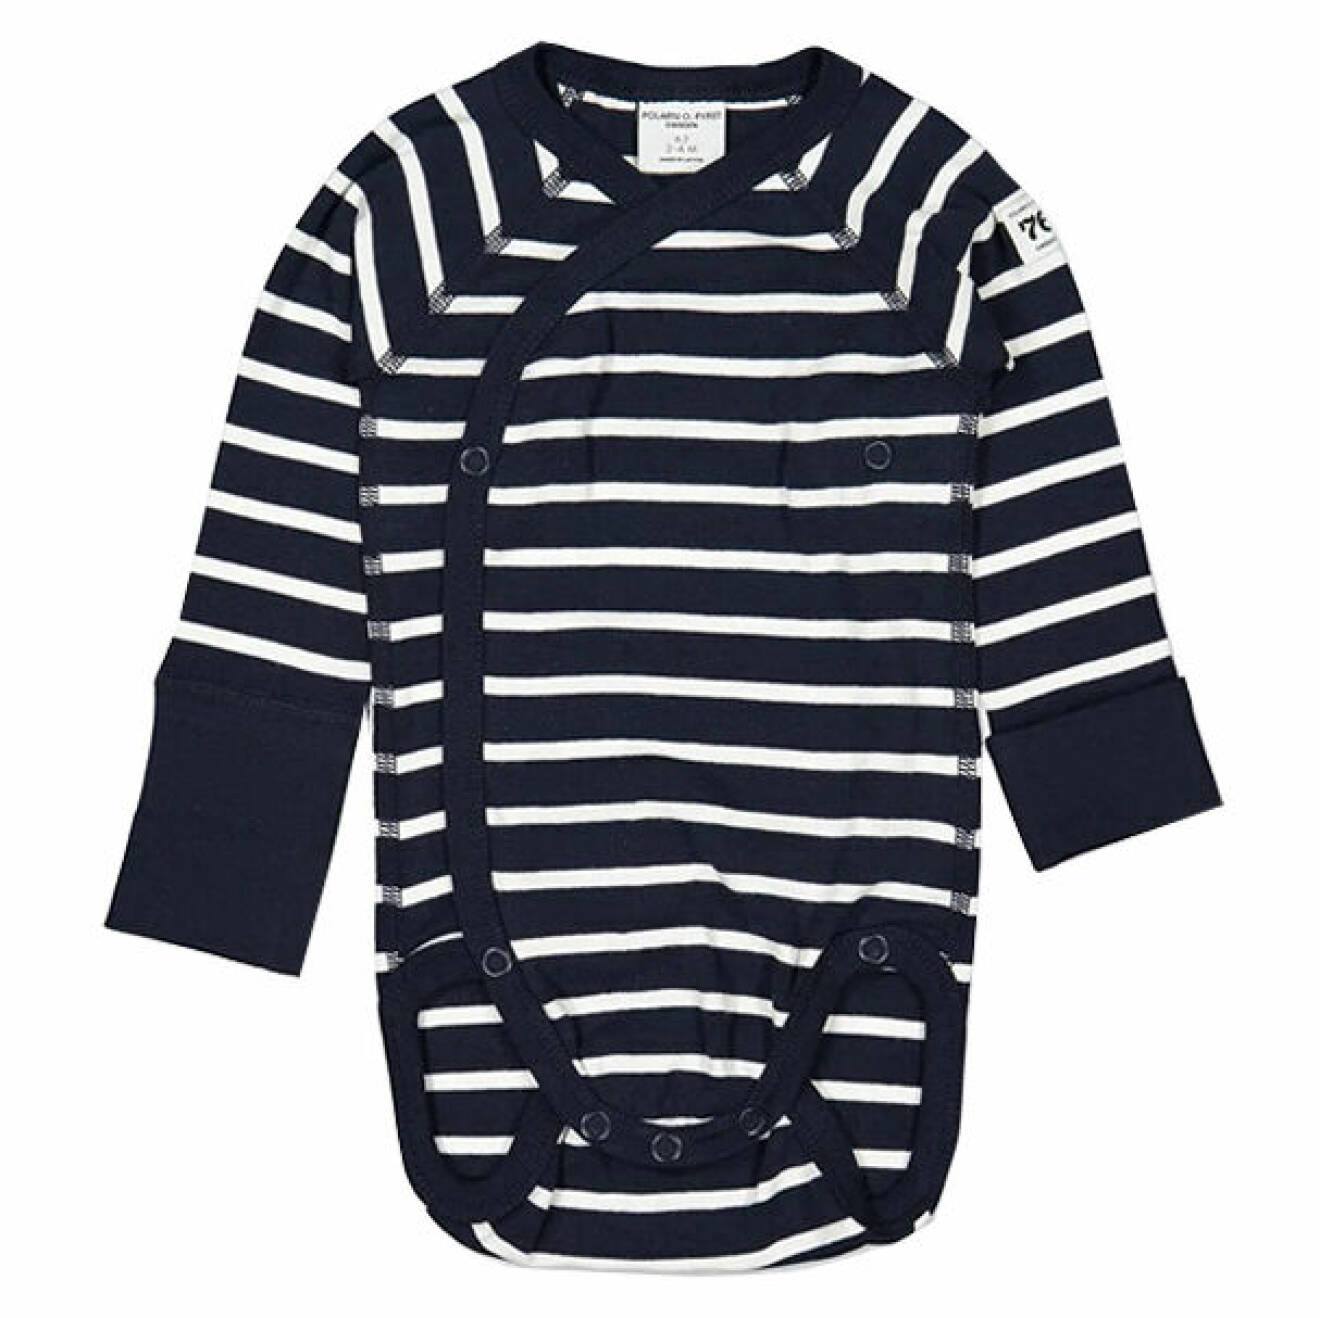 billiga och fina barnkläder - randi body för bebis från Polarn o pyret